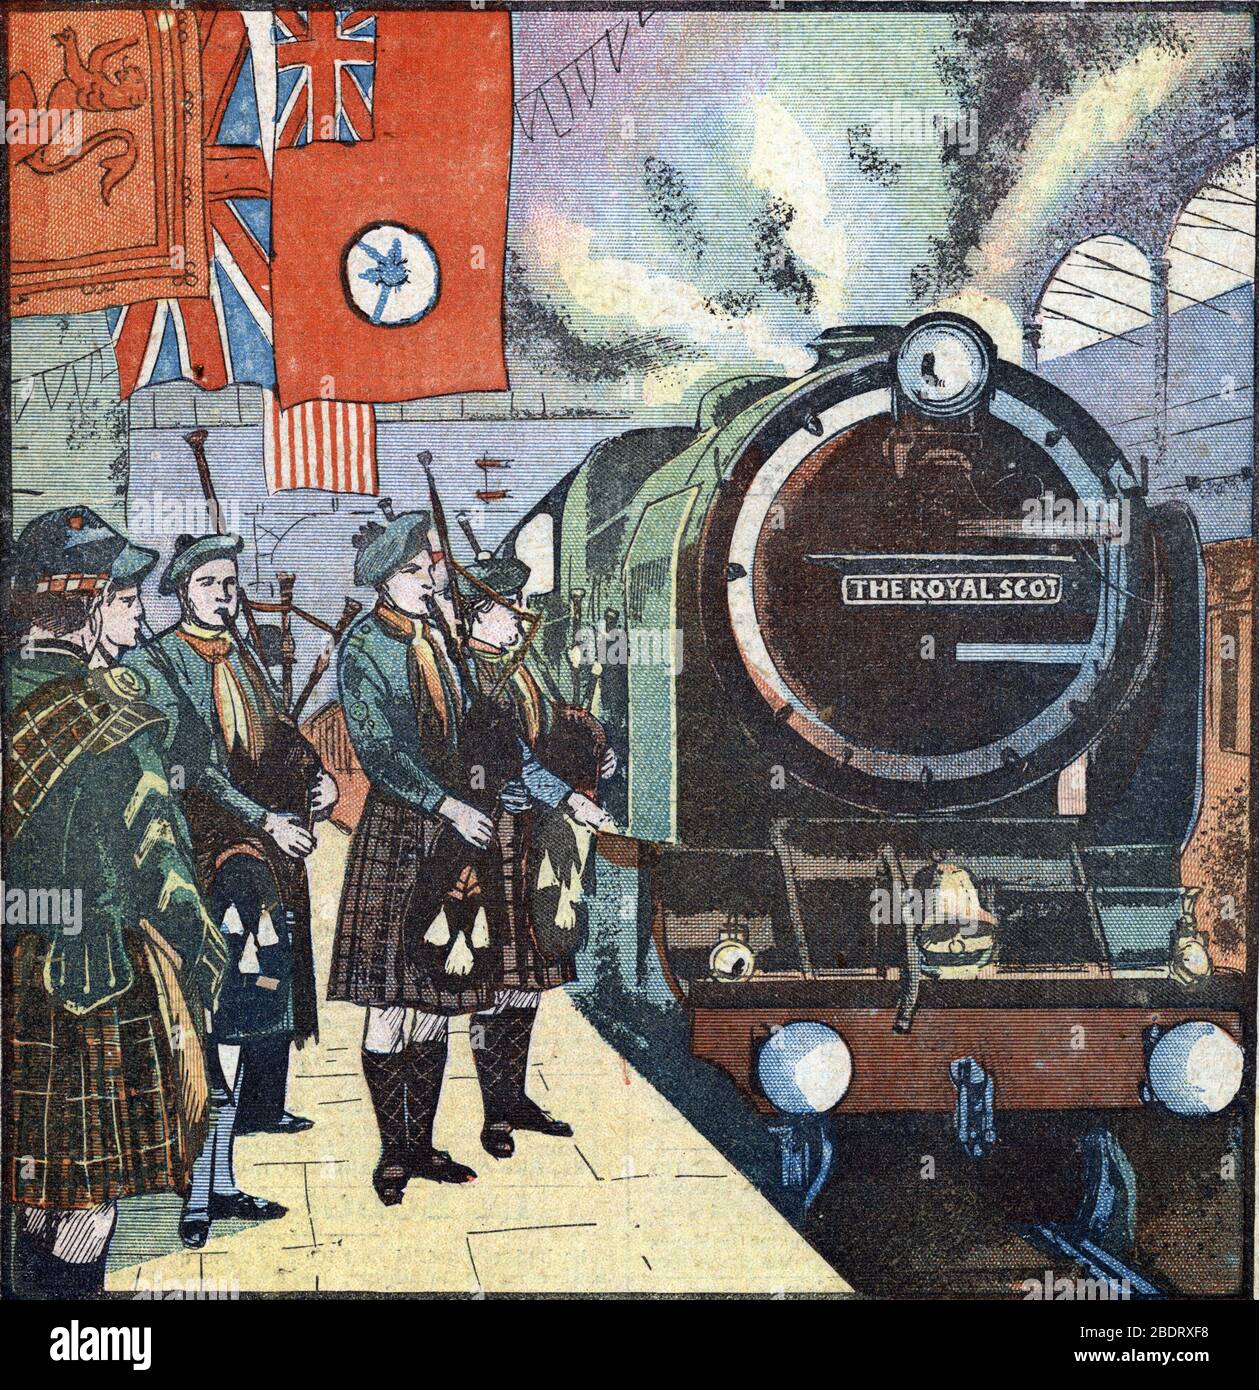 'L'arrivee du train 'Royal scot' a la gare d'Euston accueilli en musique par les boy scouts (boy-scouts) ecossais' (The royal scot train in the Euston Stock Photo